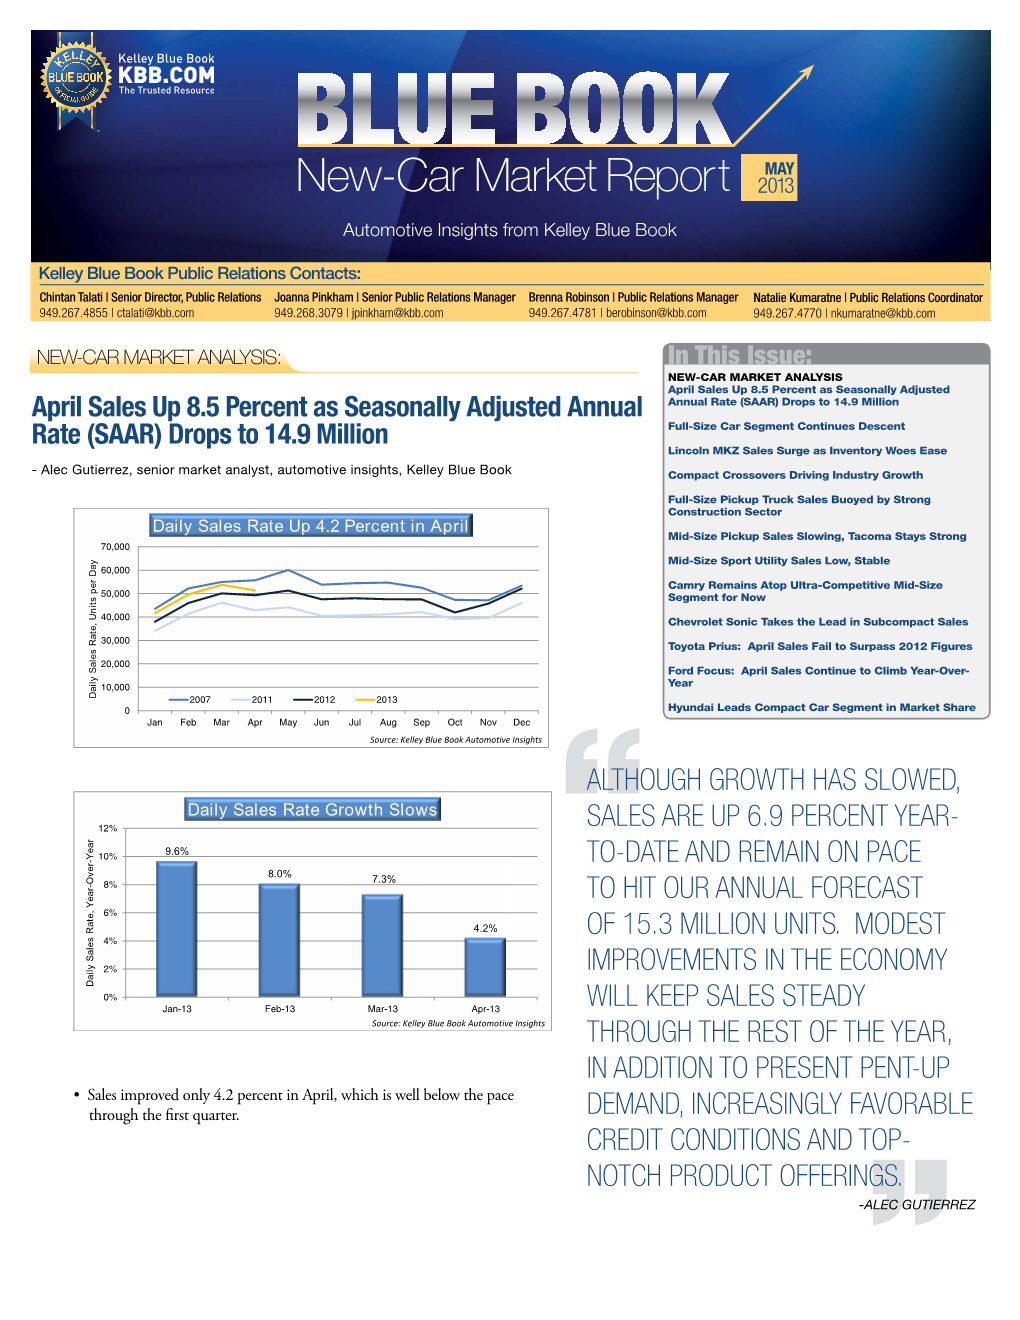 New-Car Market Report 2013